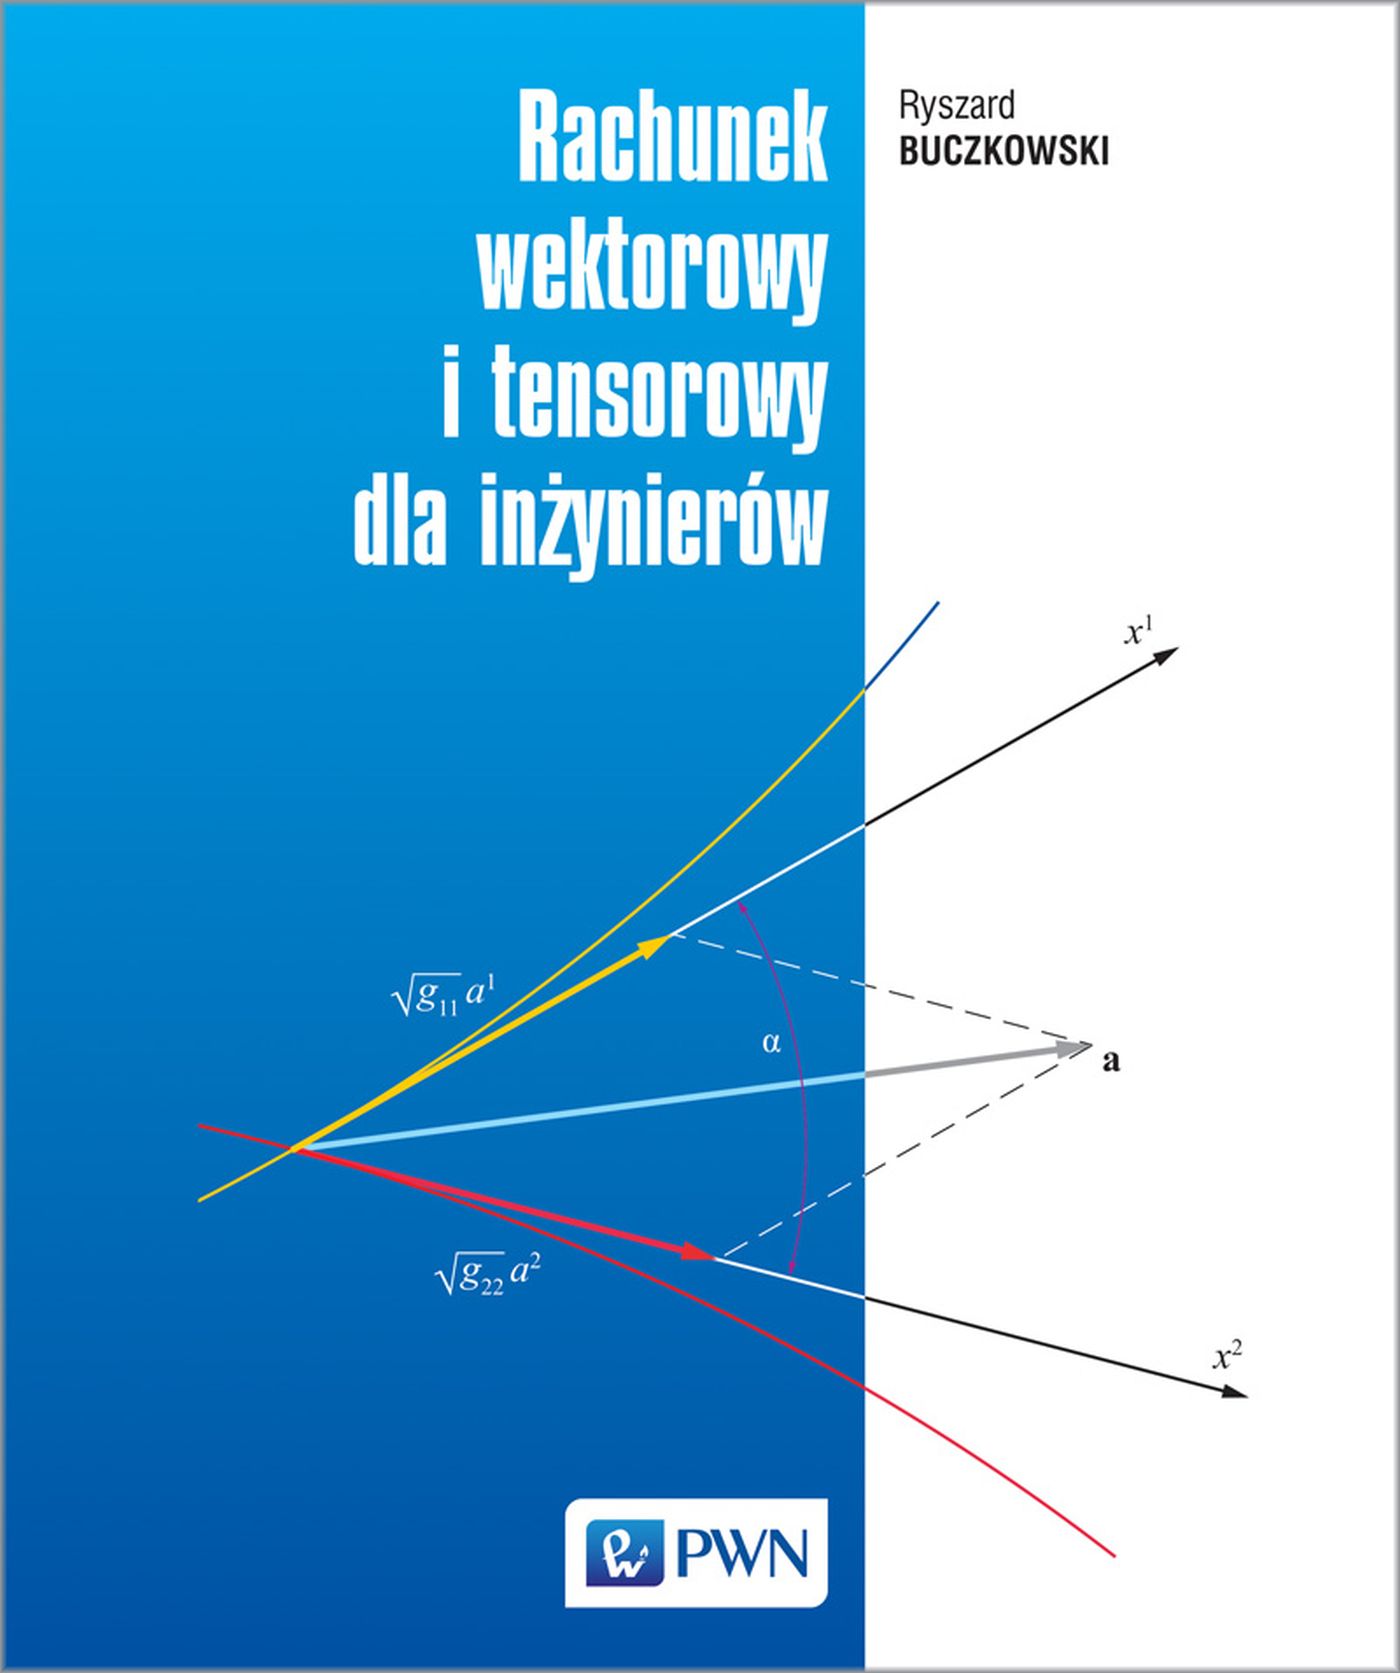 Carte Rachunek wektorowy i tensorowy dla inżynierów Ryszard Buczkowski